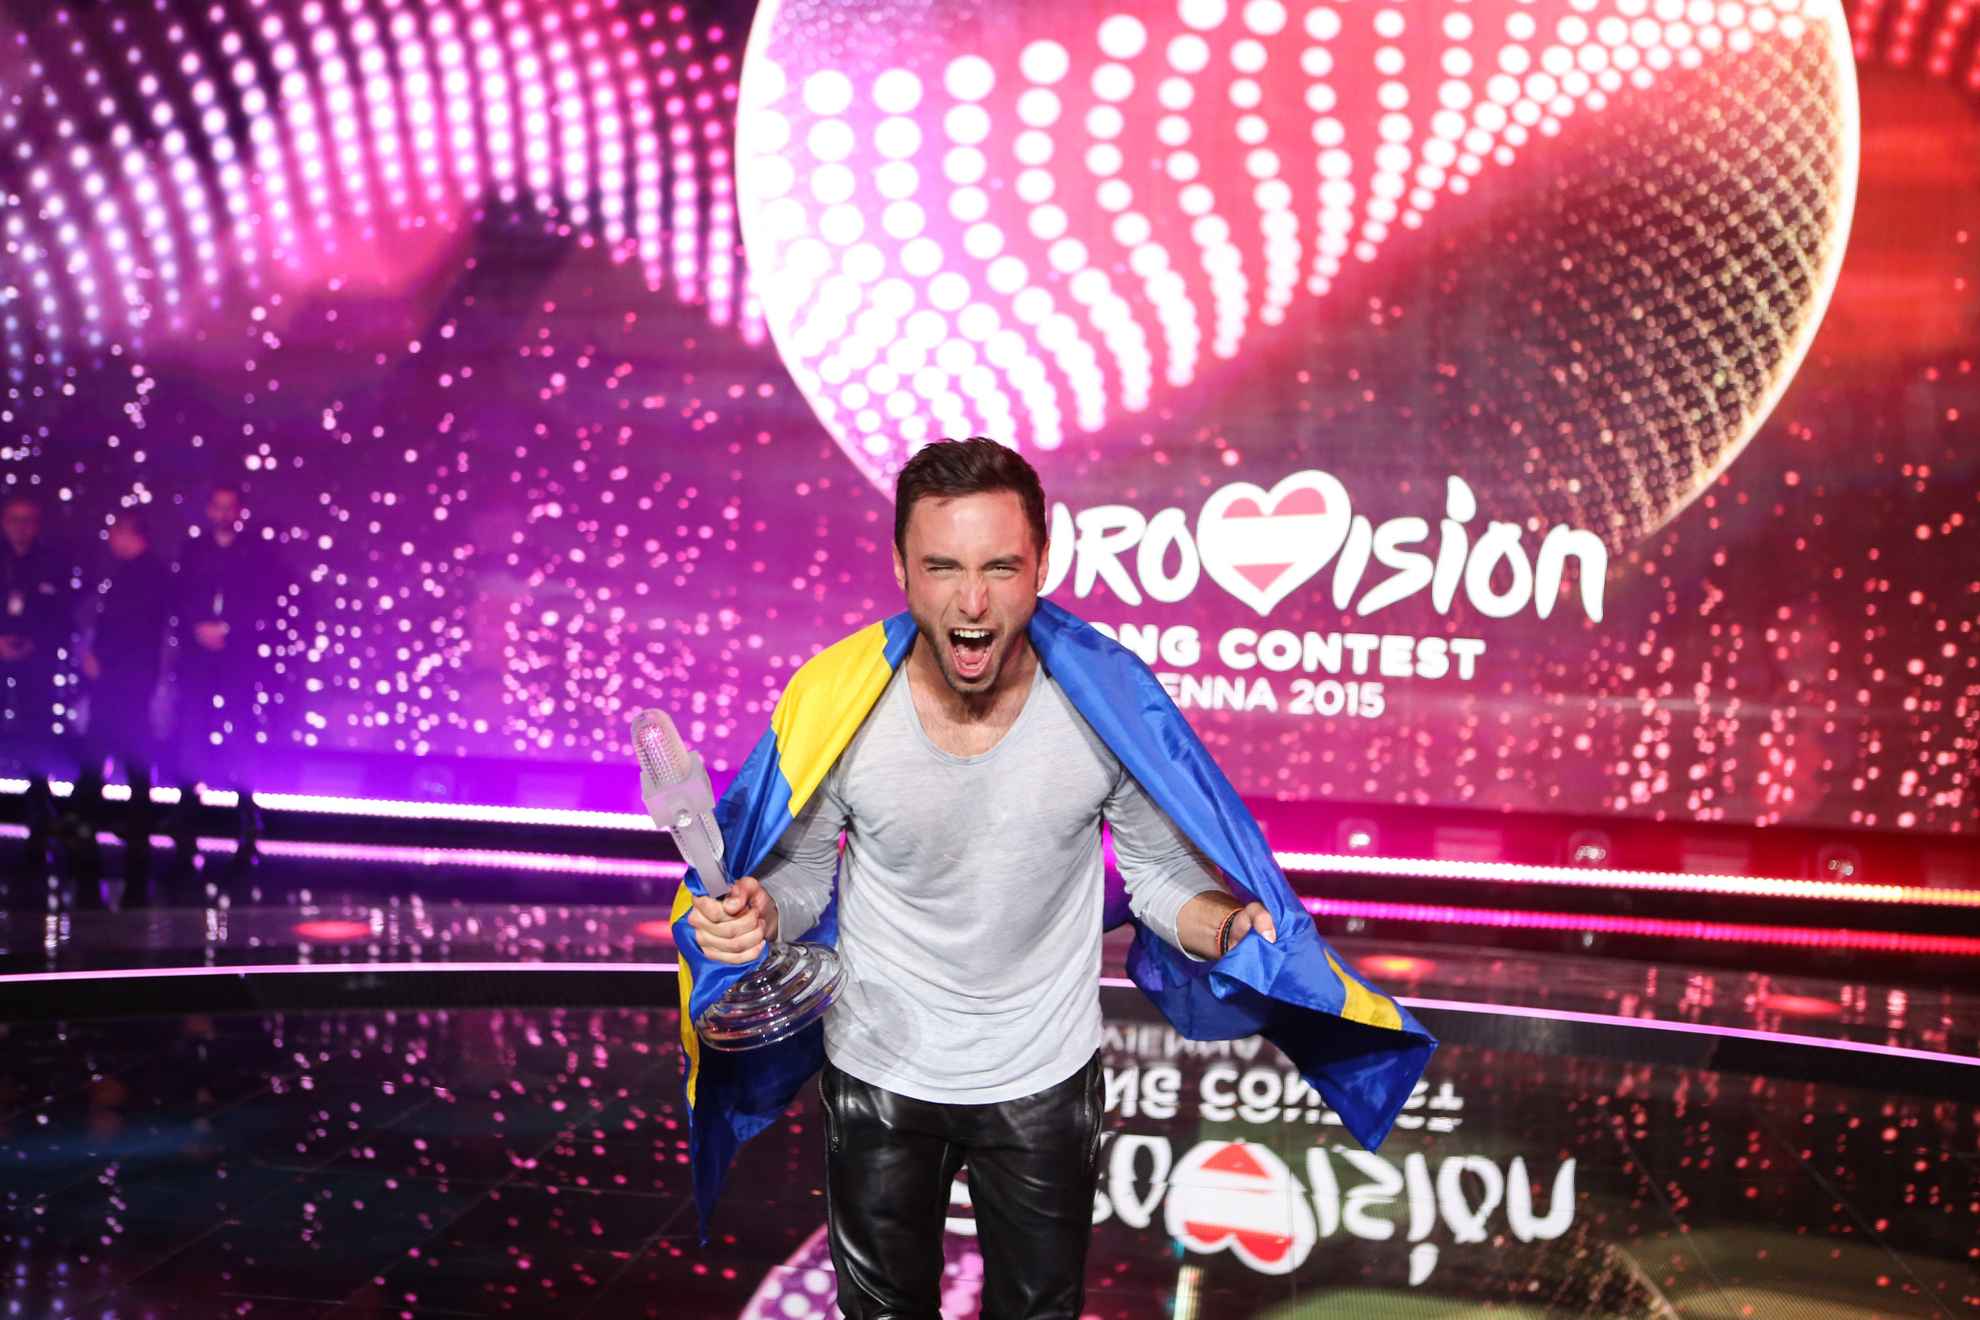 Måns Zelmerlöw op Eurovisie Songfestival in Wenen 2015